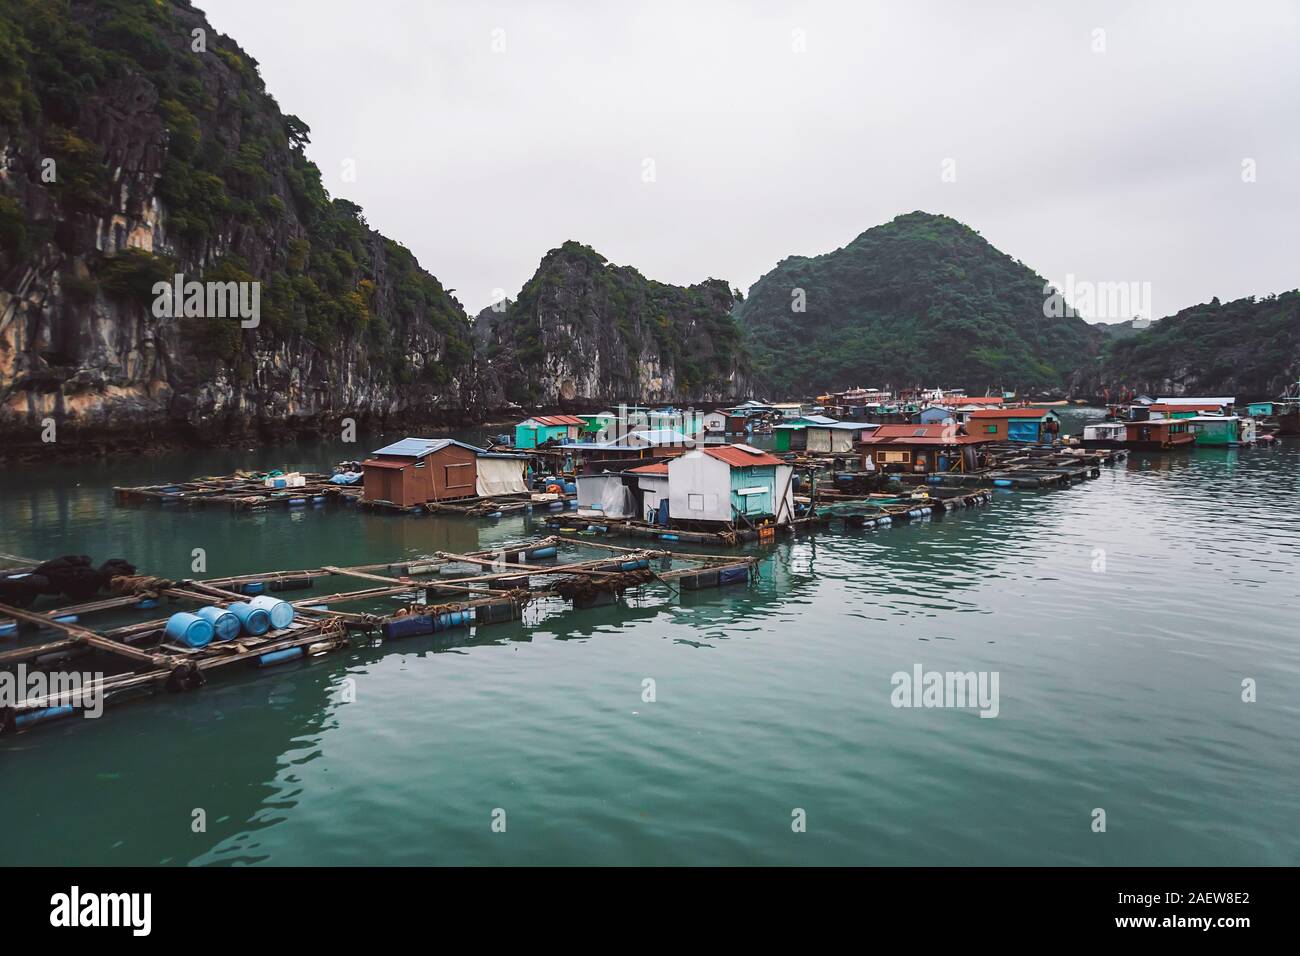 Pisciculture flottante dans la baie de Ha Long vietnam. Pauvres, indigents. production de poissons et crustacés dans la mer. Banque D'Images